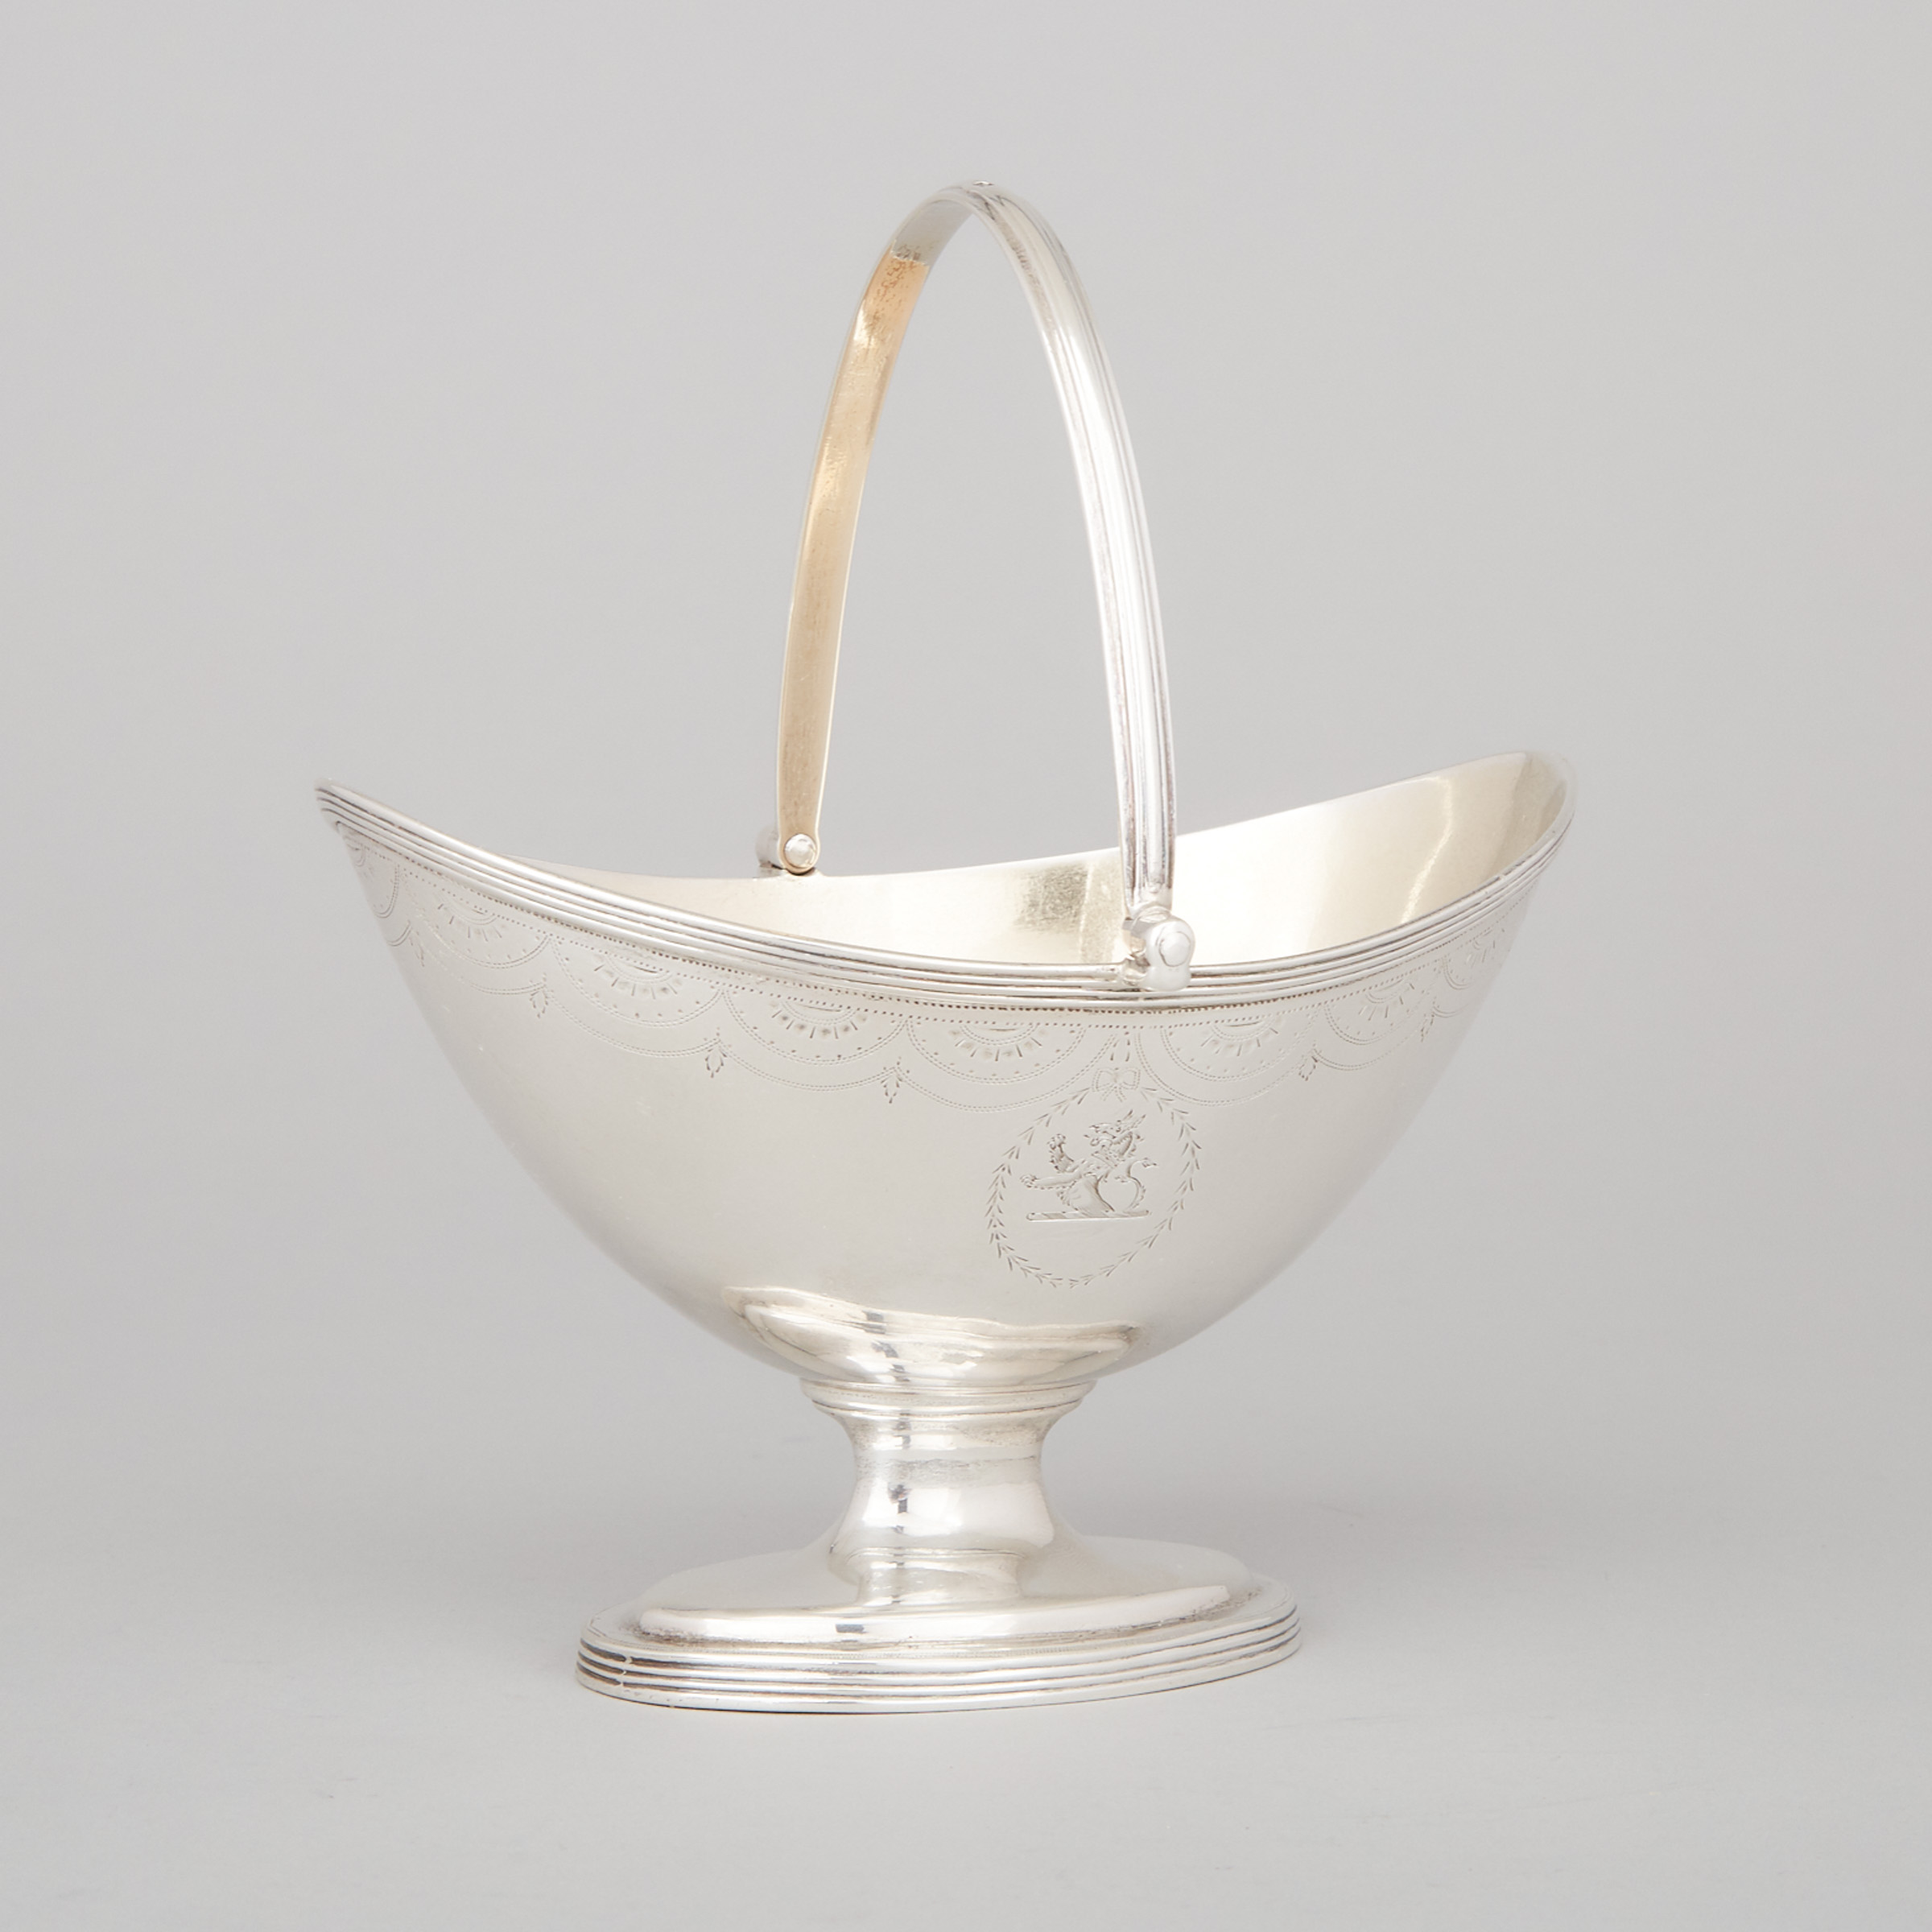 George III Silver Oval Sugar Basket, William Abdy, London, 1799